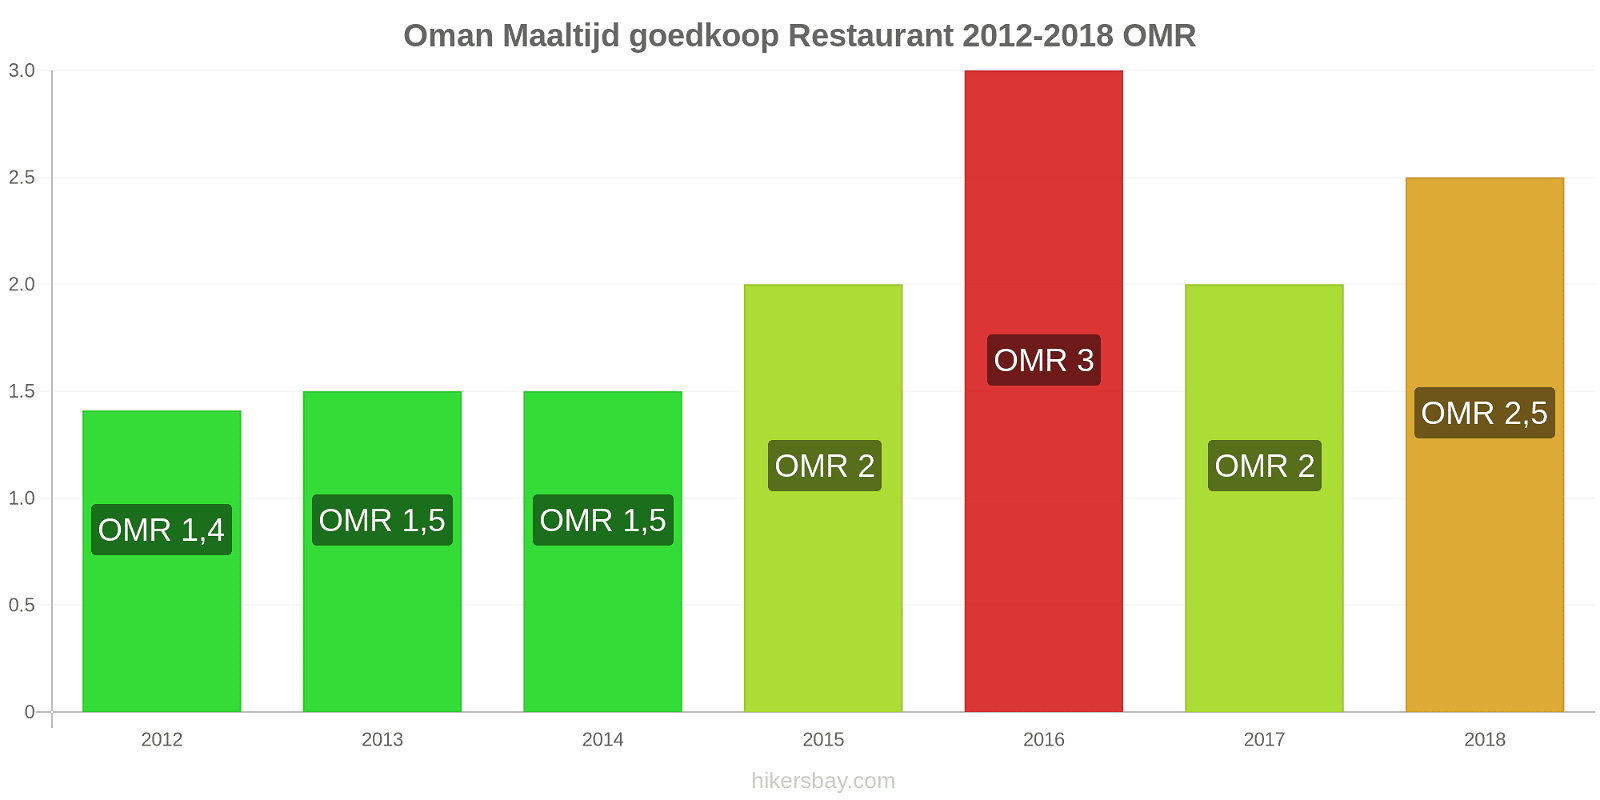 Oman prijswijzigingen Maaltijd in een goedkoop restaurant hikersbay.com